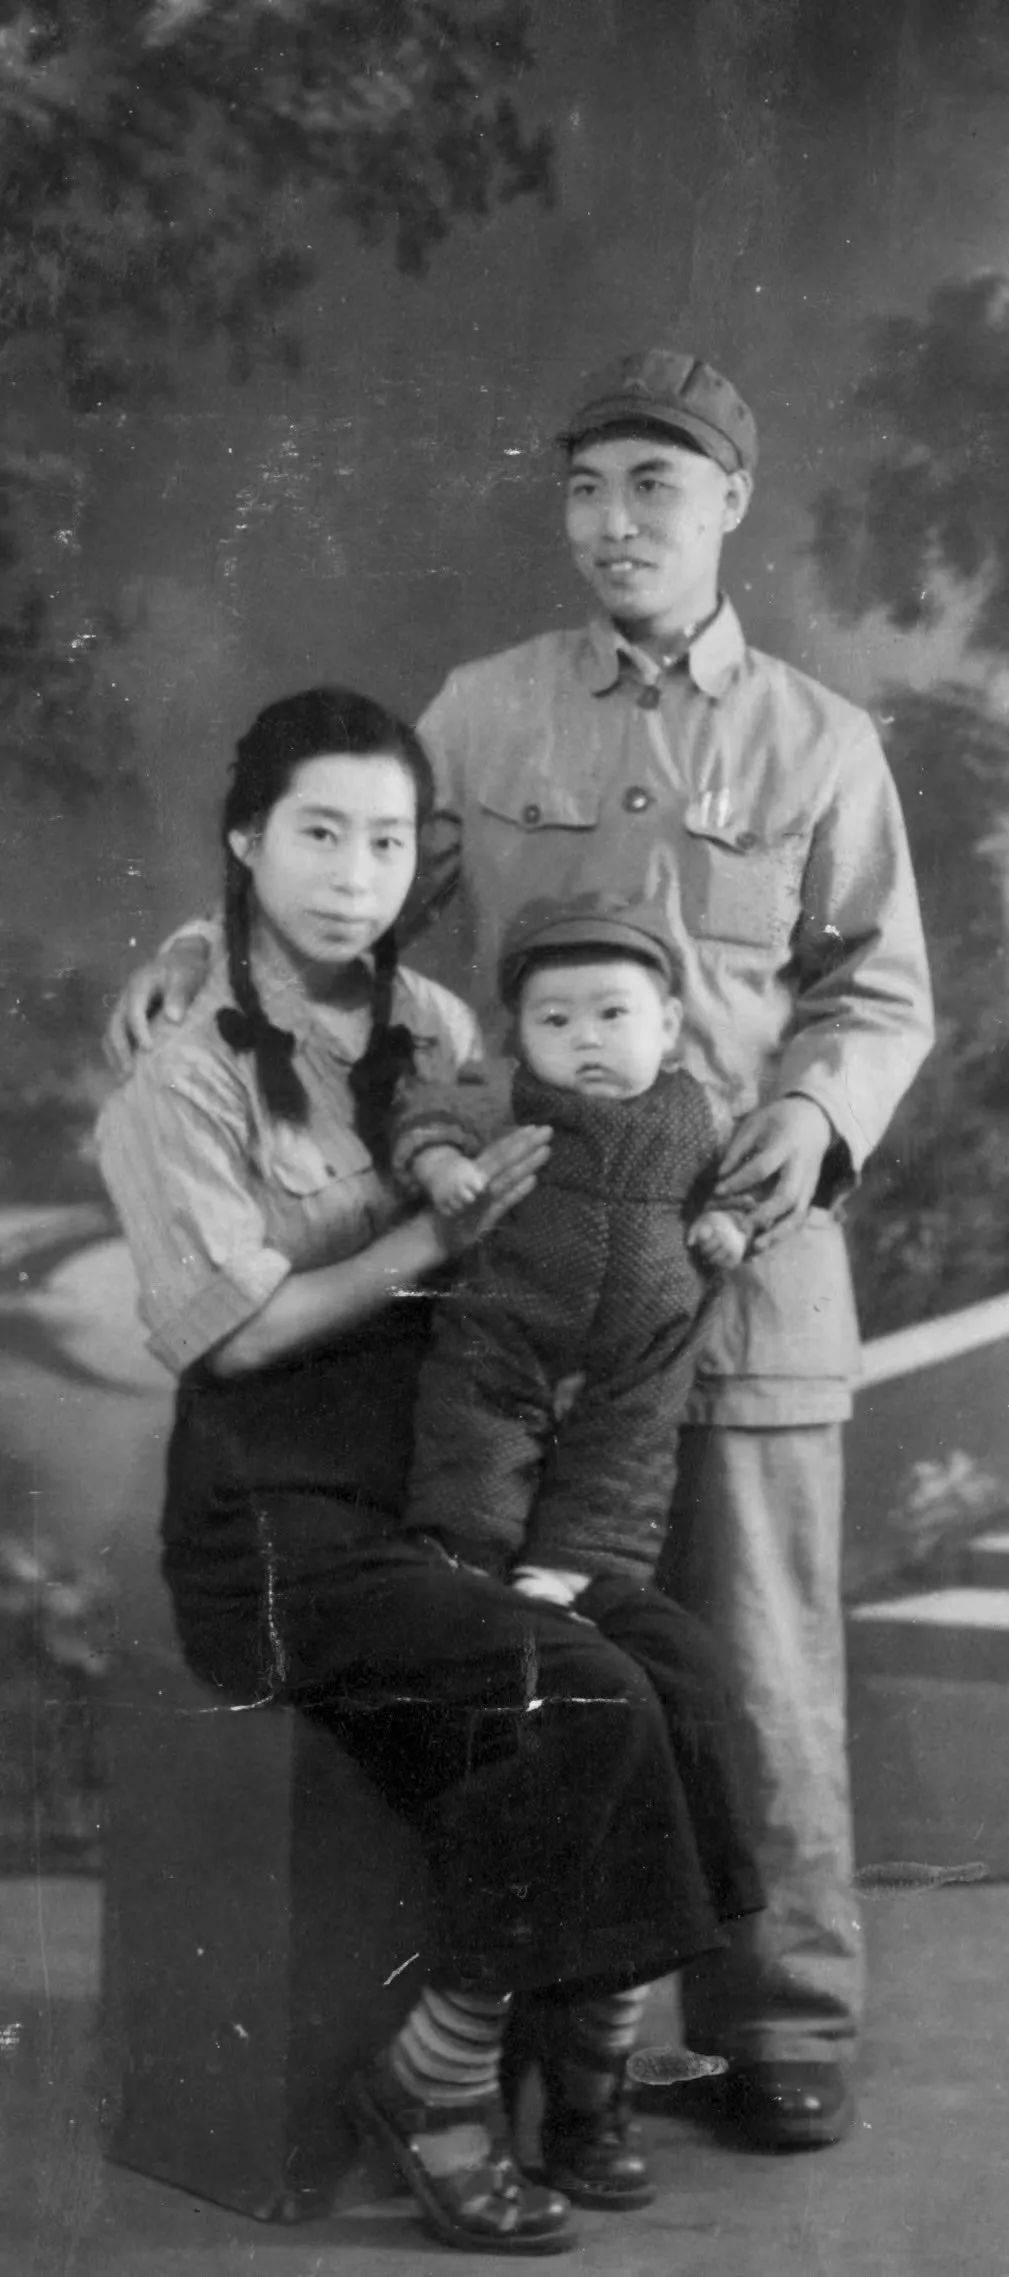 吴宝光,刘珠玉与儿子吴征合影,摄于1951年秋1951年6月吴宝光奉命回国